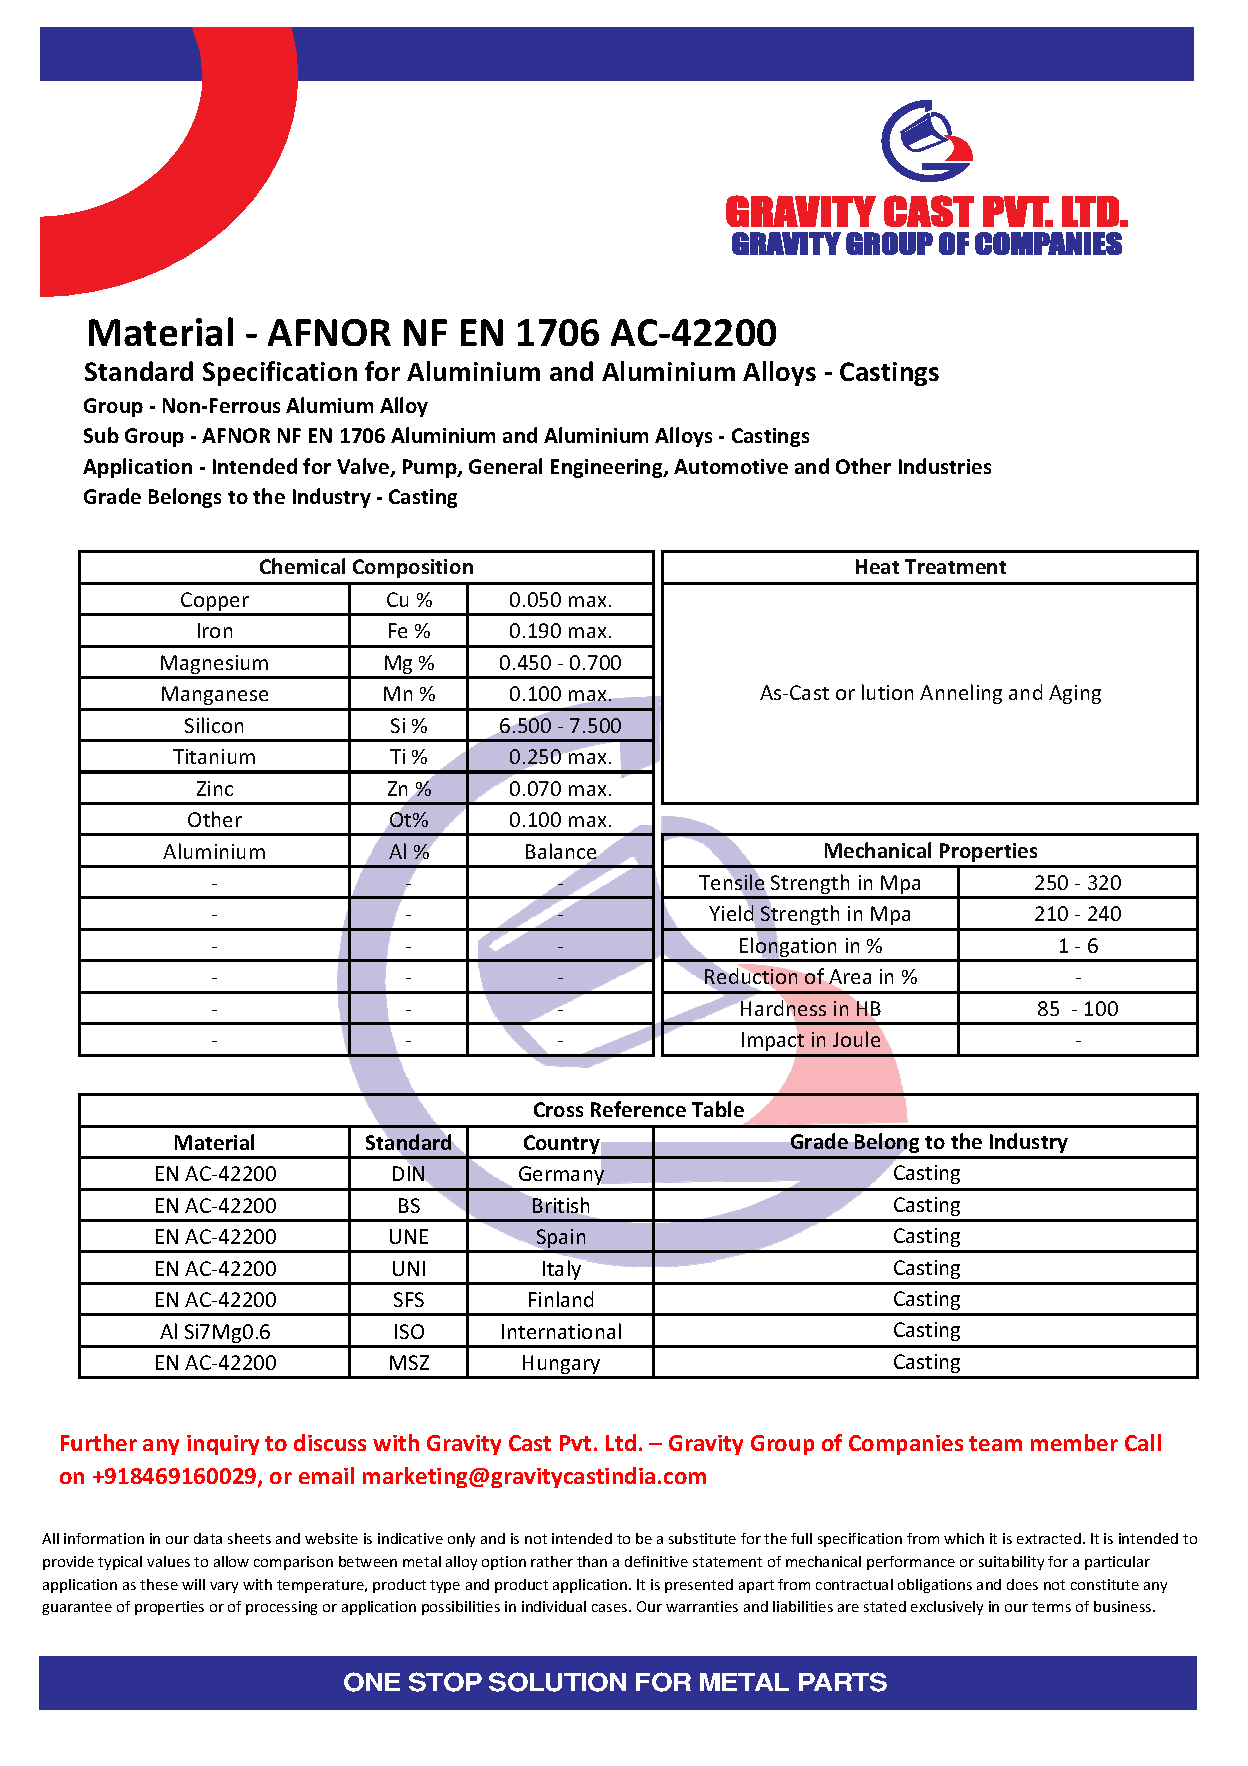 AFNOR NF EN 1706 AC-42200.pdf